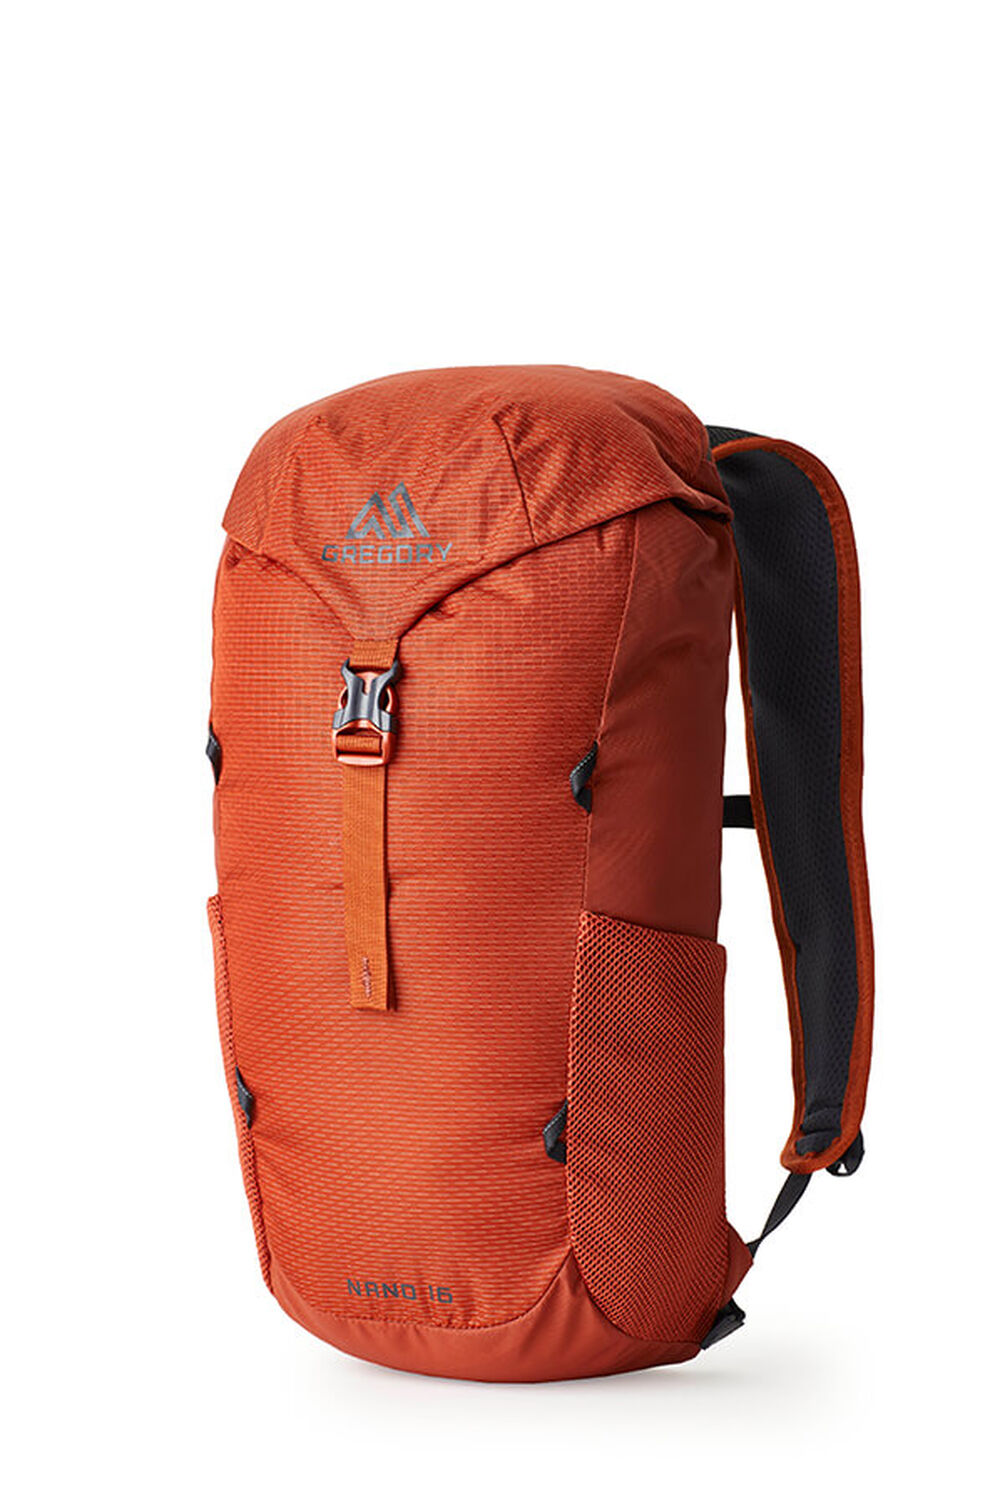 gregorypacks.com | Nano 16 Backpack Spark Orange